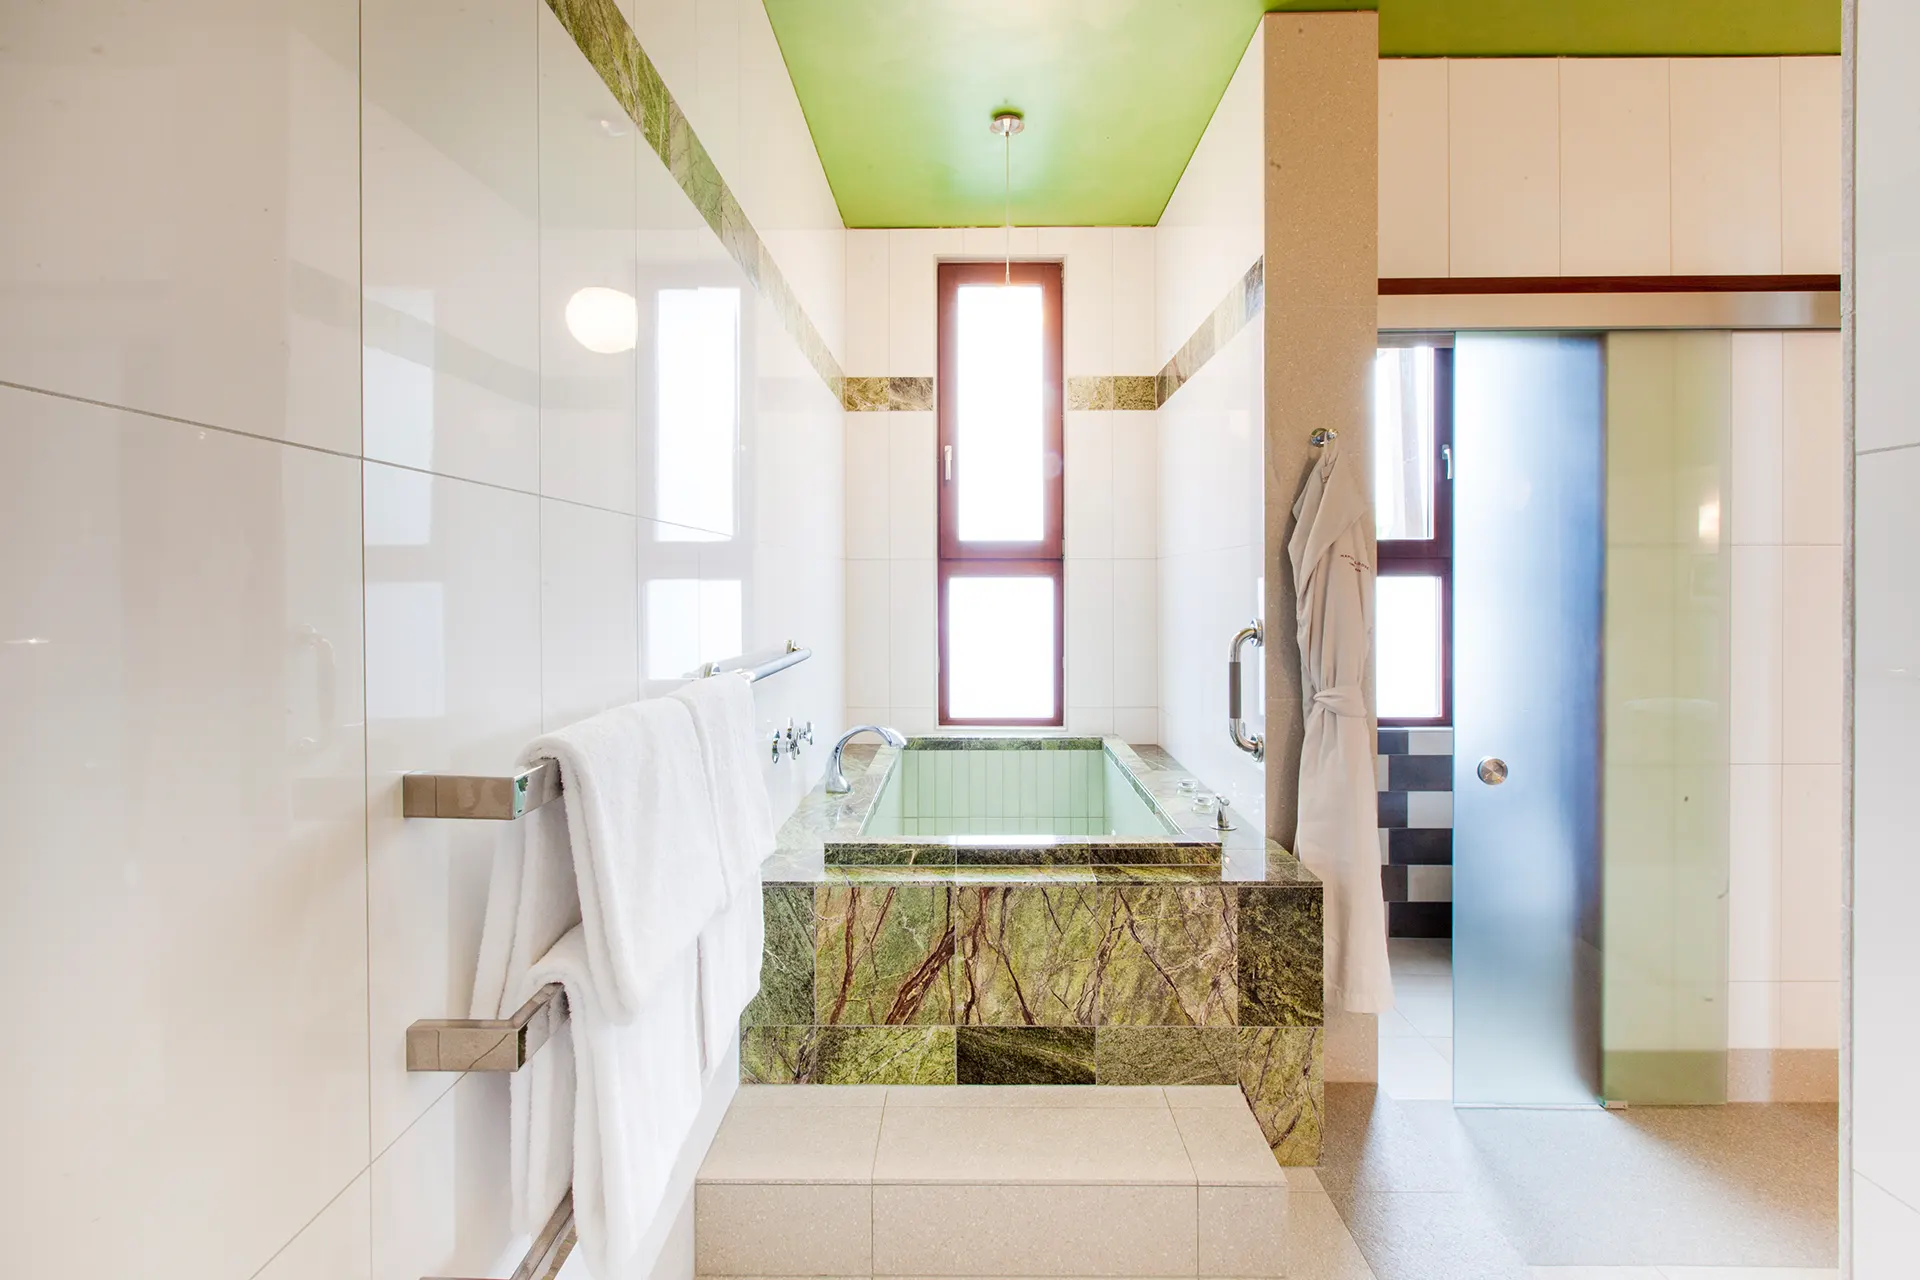 Badewanne aus grünem Stein